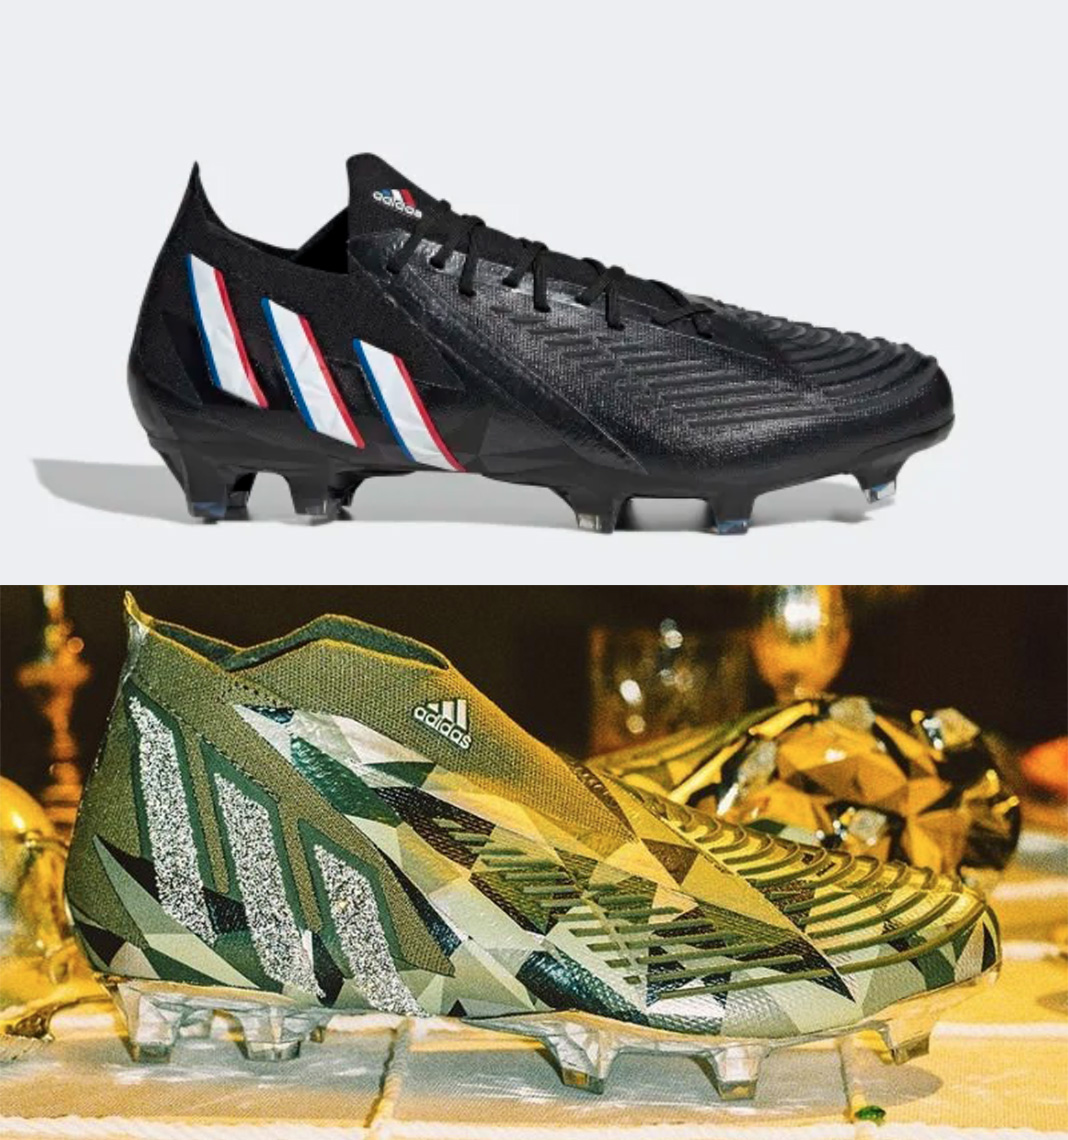 Predator Edge là thiết kế giày đá bóng nổi tiếng của Adidas với thiết kế cá tính, mạng mẽ nhưng không kém phần thời trang (phiên bản gốc ở trên và phiên bản với pah lê ở dưới).